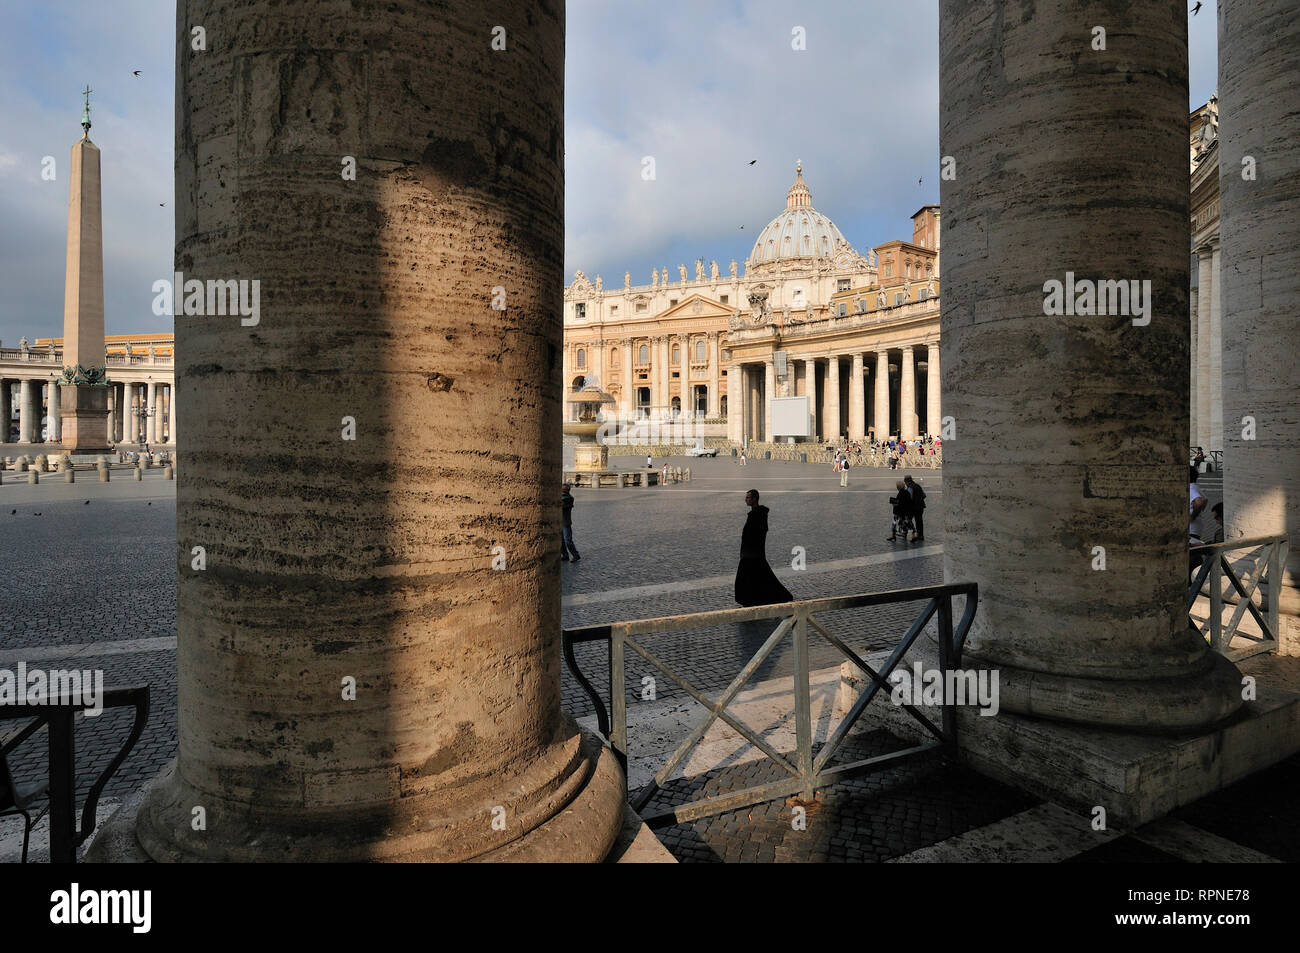 Rome. Italy. Bernini's colonnade and Basilica di San Pietro, Piazza San Pietro (St Peter's Square). Stock Photo